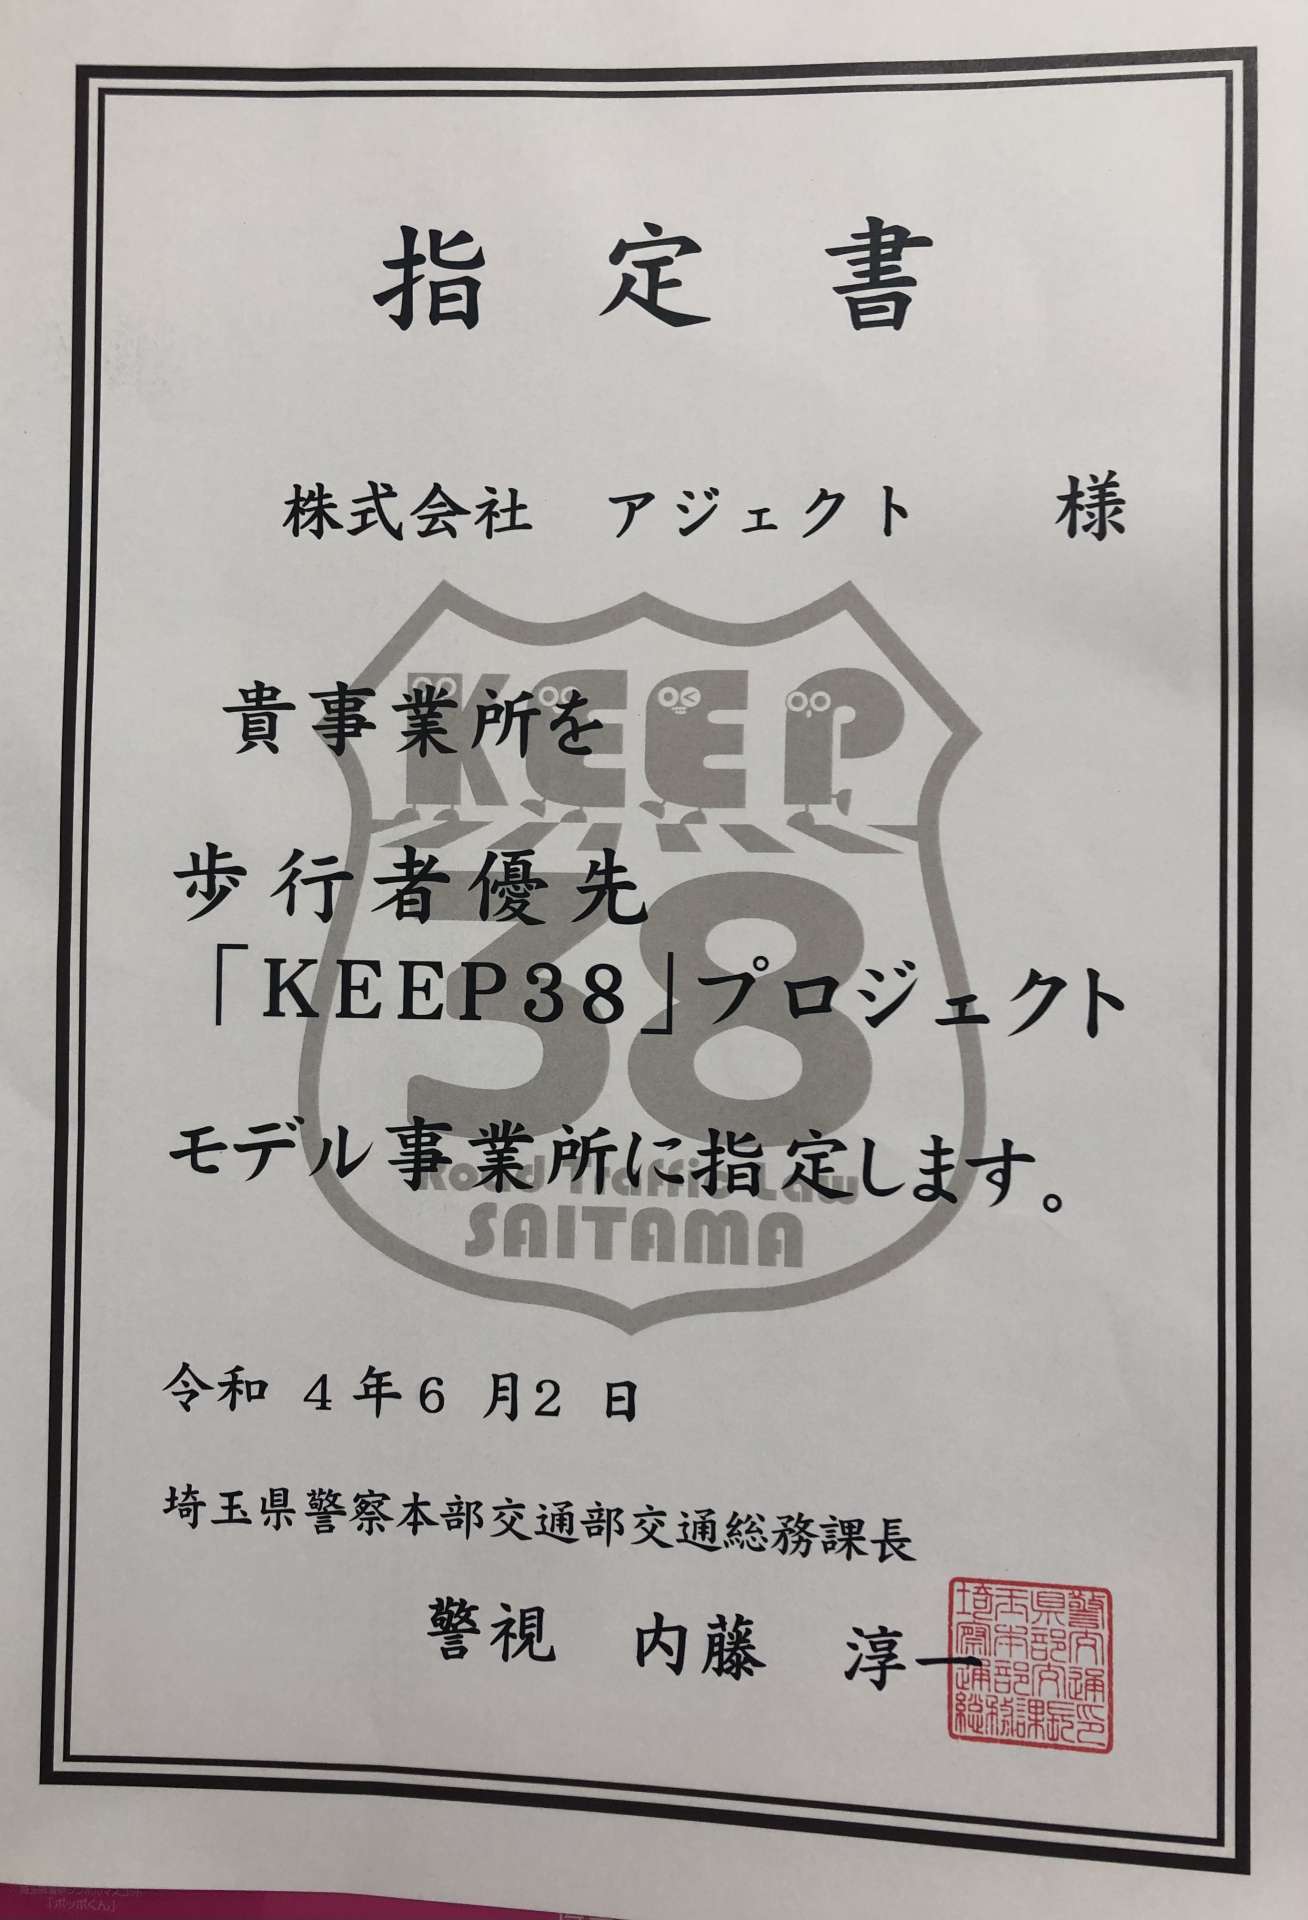 KEEP38 モデル企業に指定されまさした！